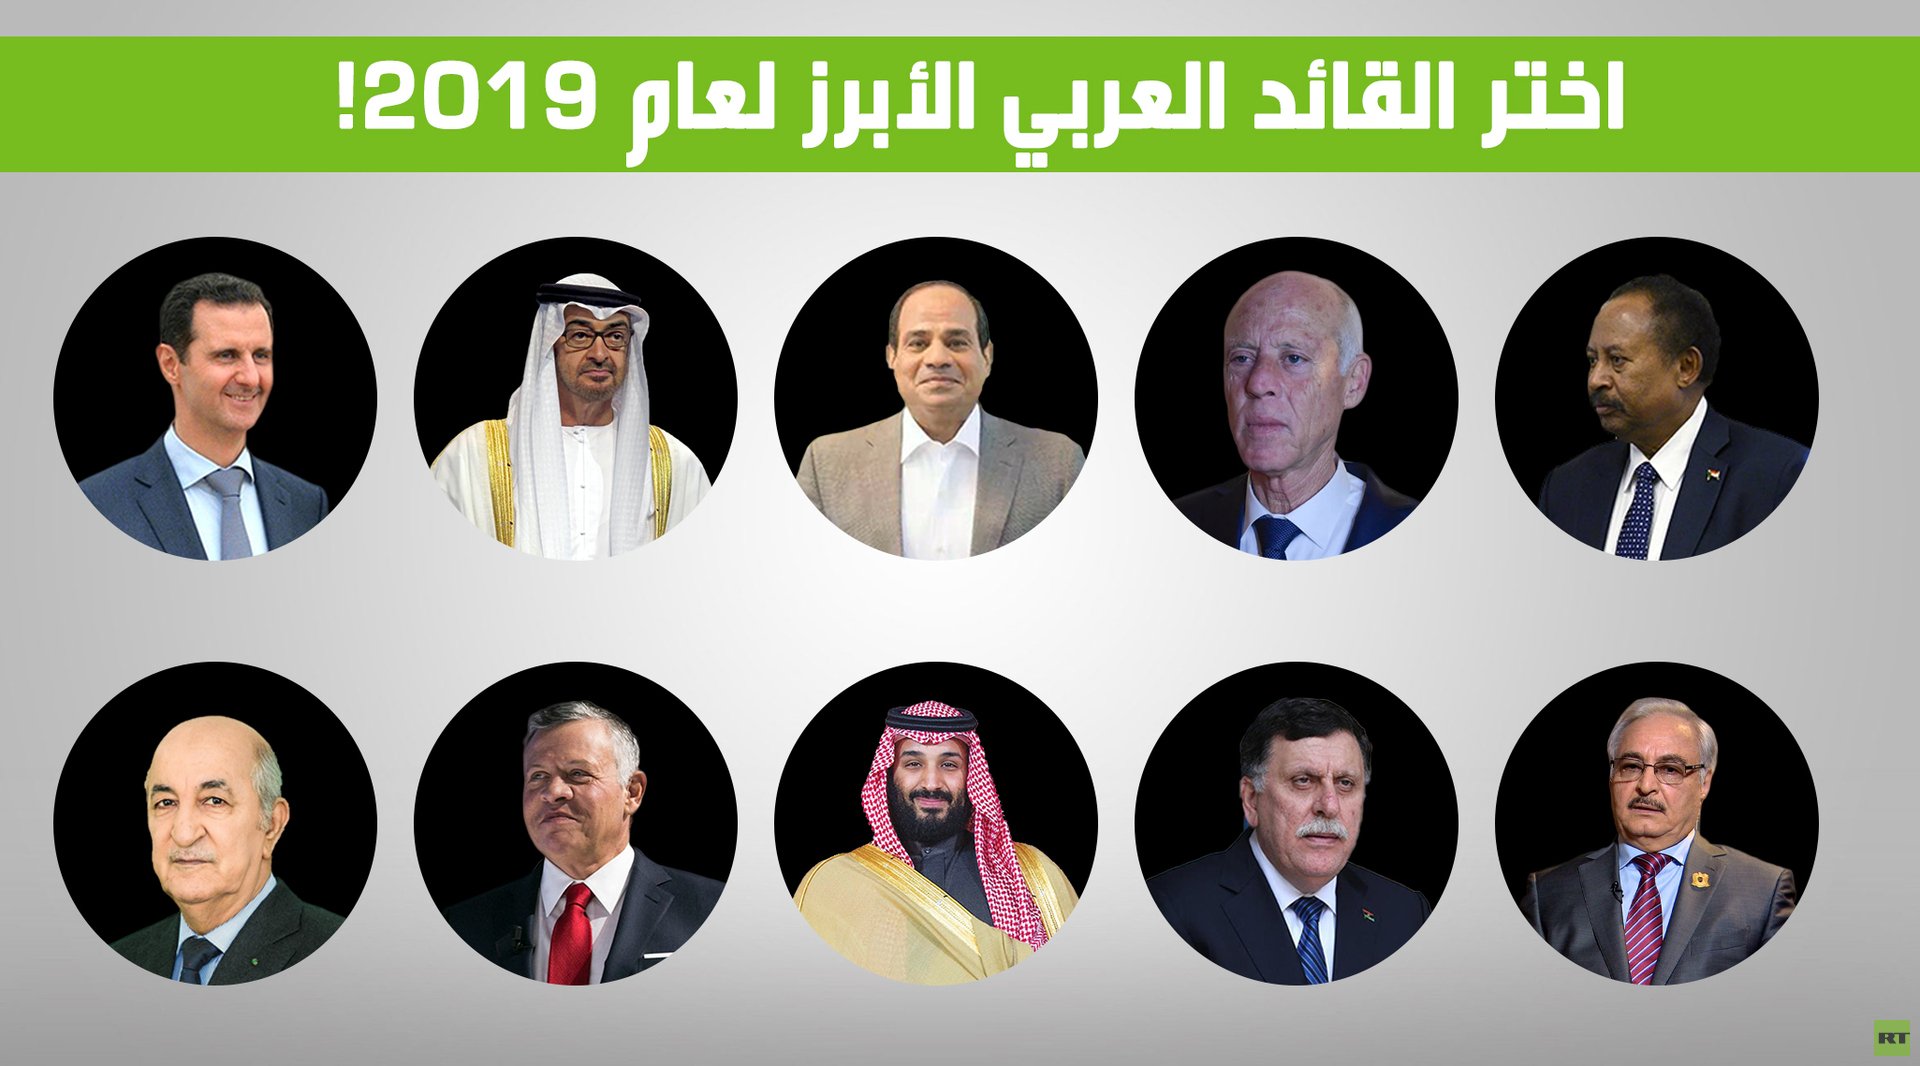 اختر القائد العربي الأبرز للعام 2019!